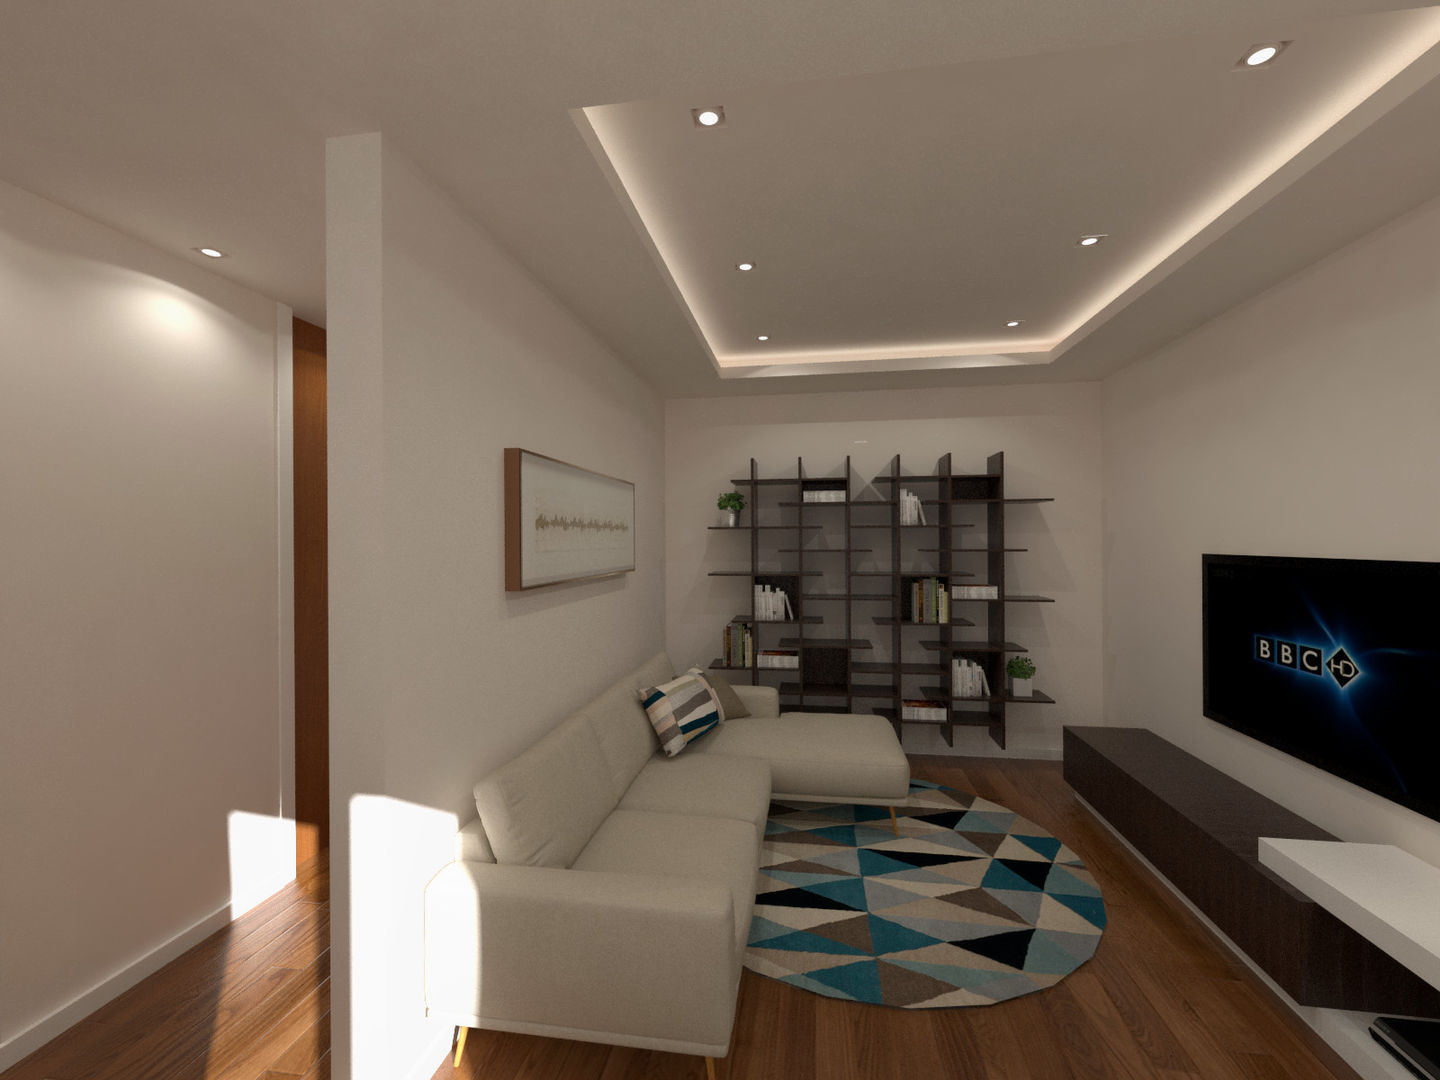 Sala de estar Linhas Simples Salas de estar modernas Branco, moderno, simples, remodelação, renovação